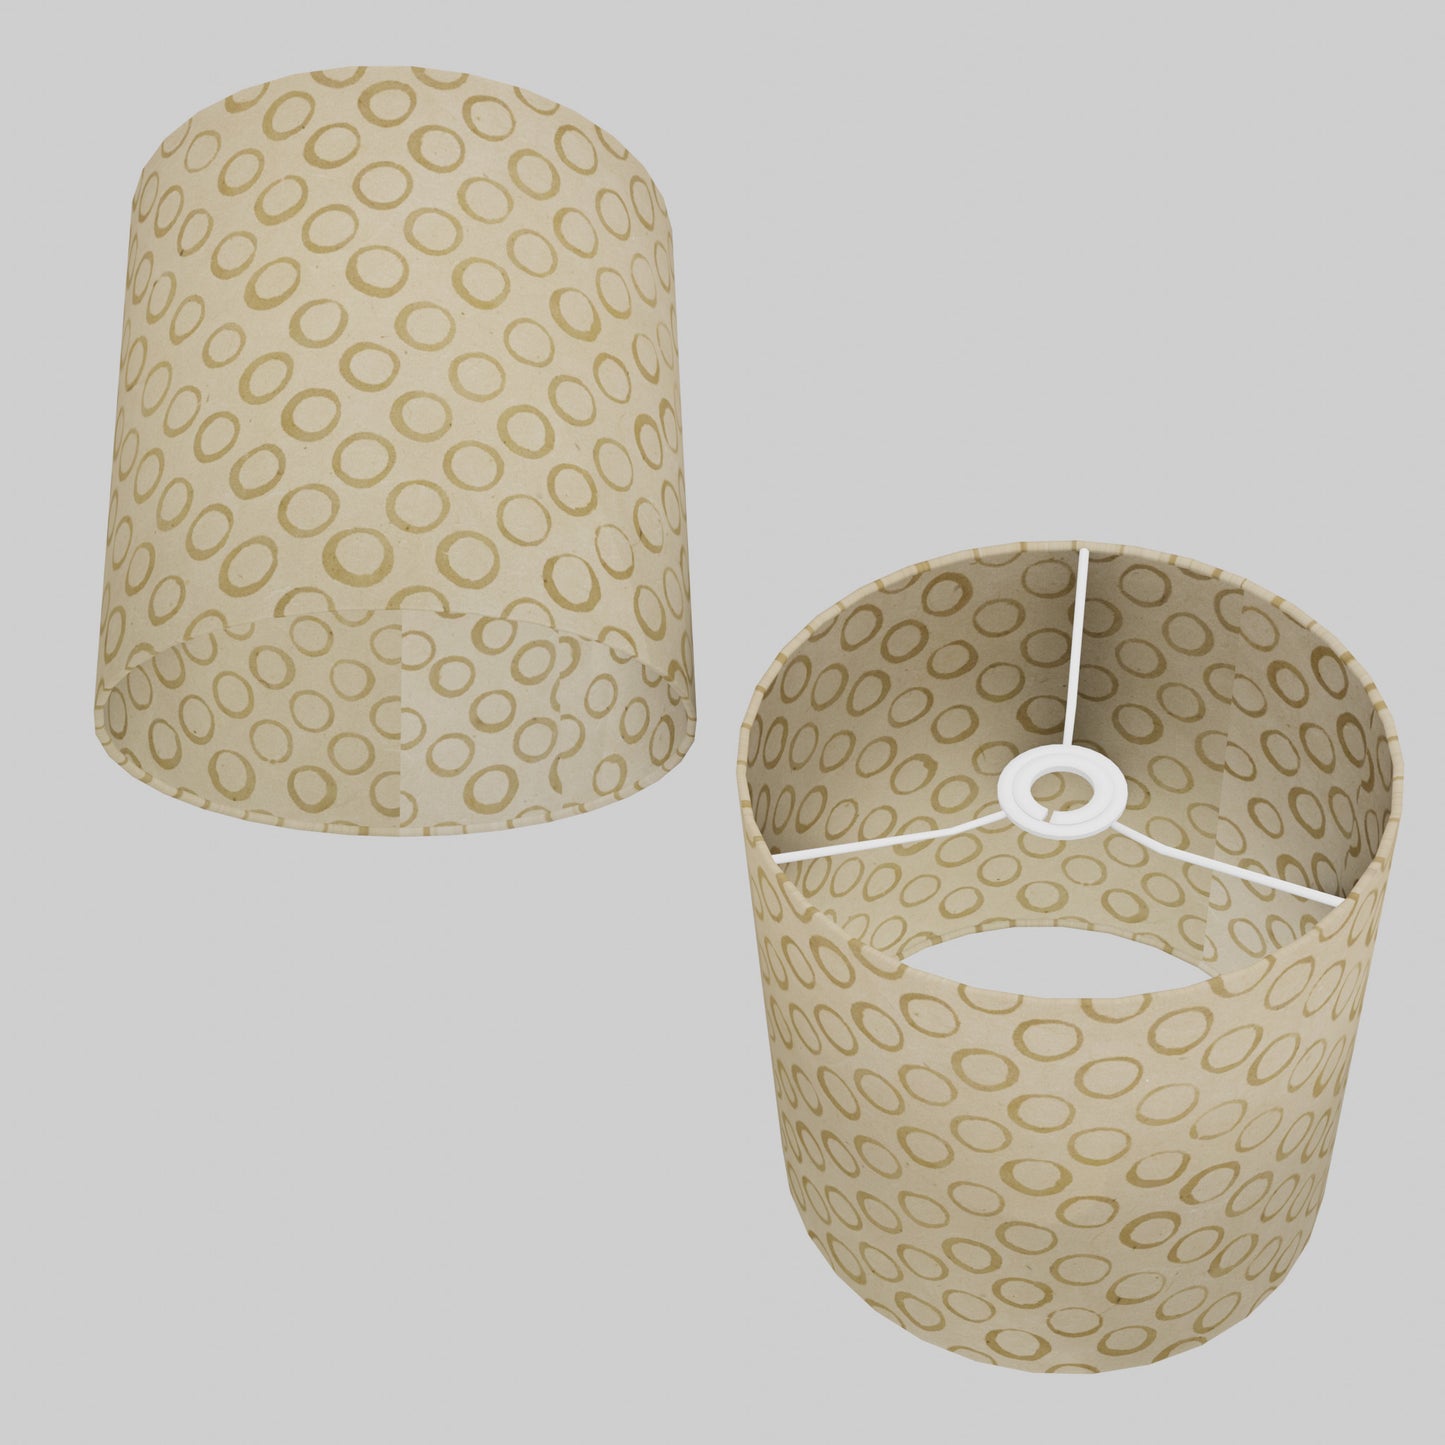 Drum Lamp Shade - P74 - Batik Natural Circles, 25cm x 25cm